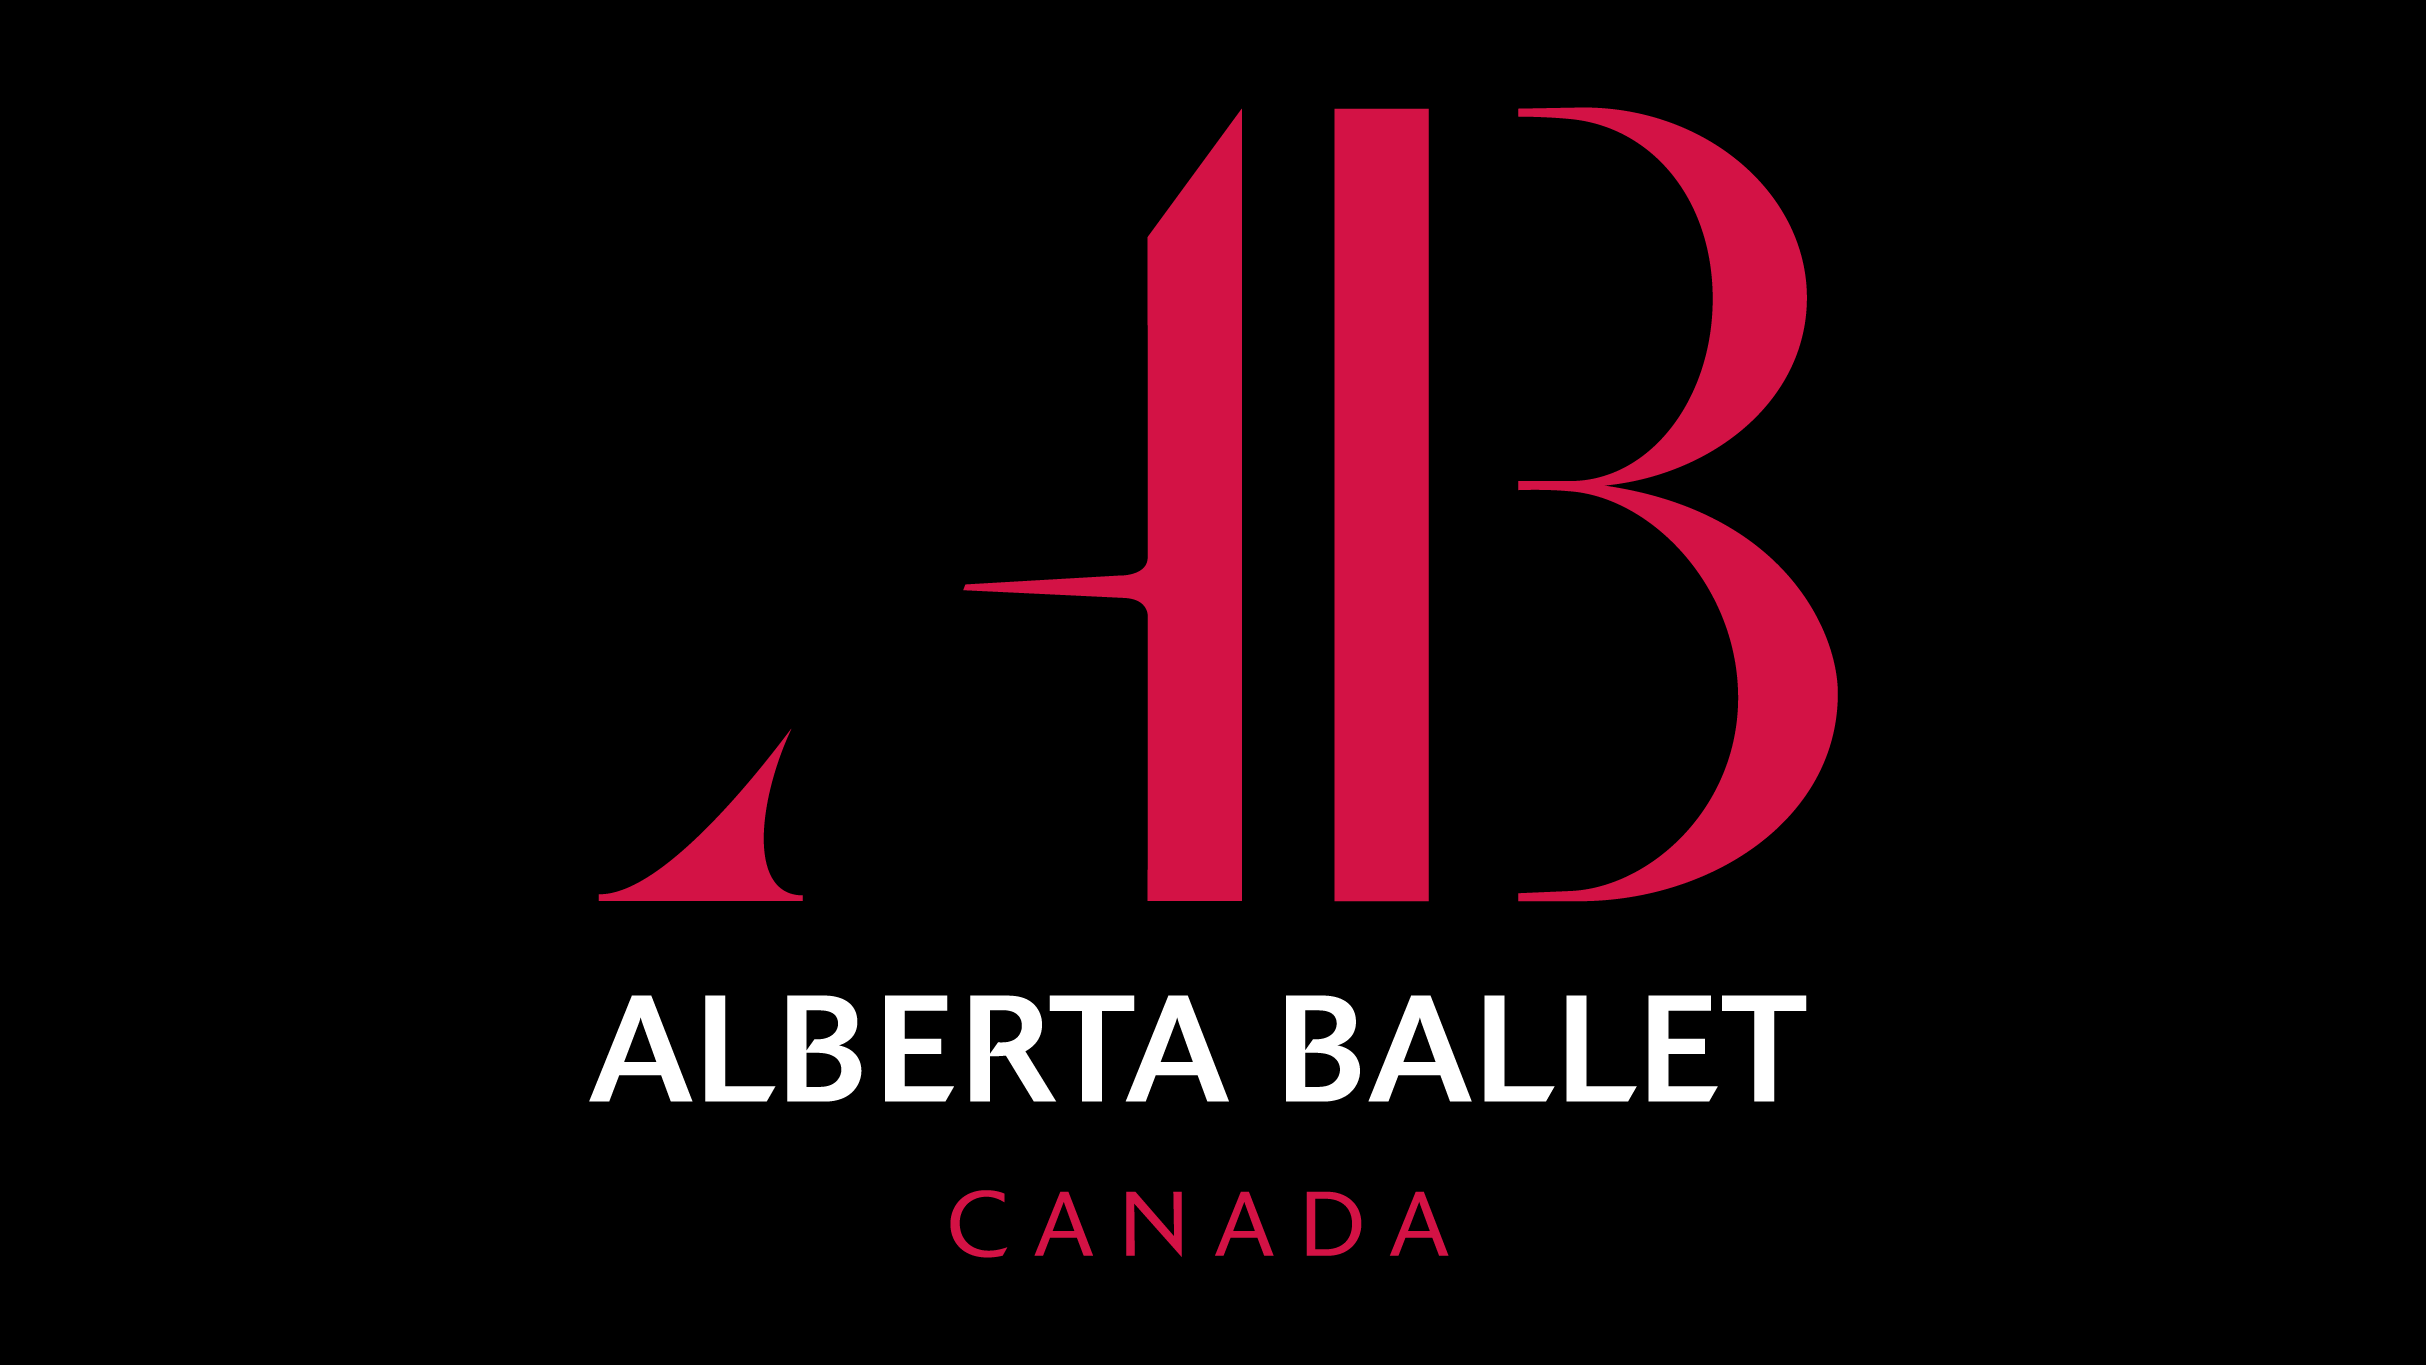 Alberta Ballet Welcomes Beijing Dance Theatre in Hamlet in Calgary promo photo for Discount  presale offer code